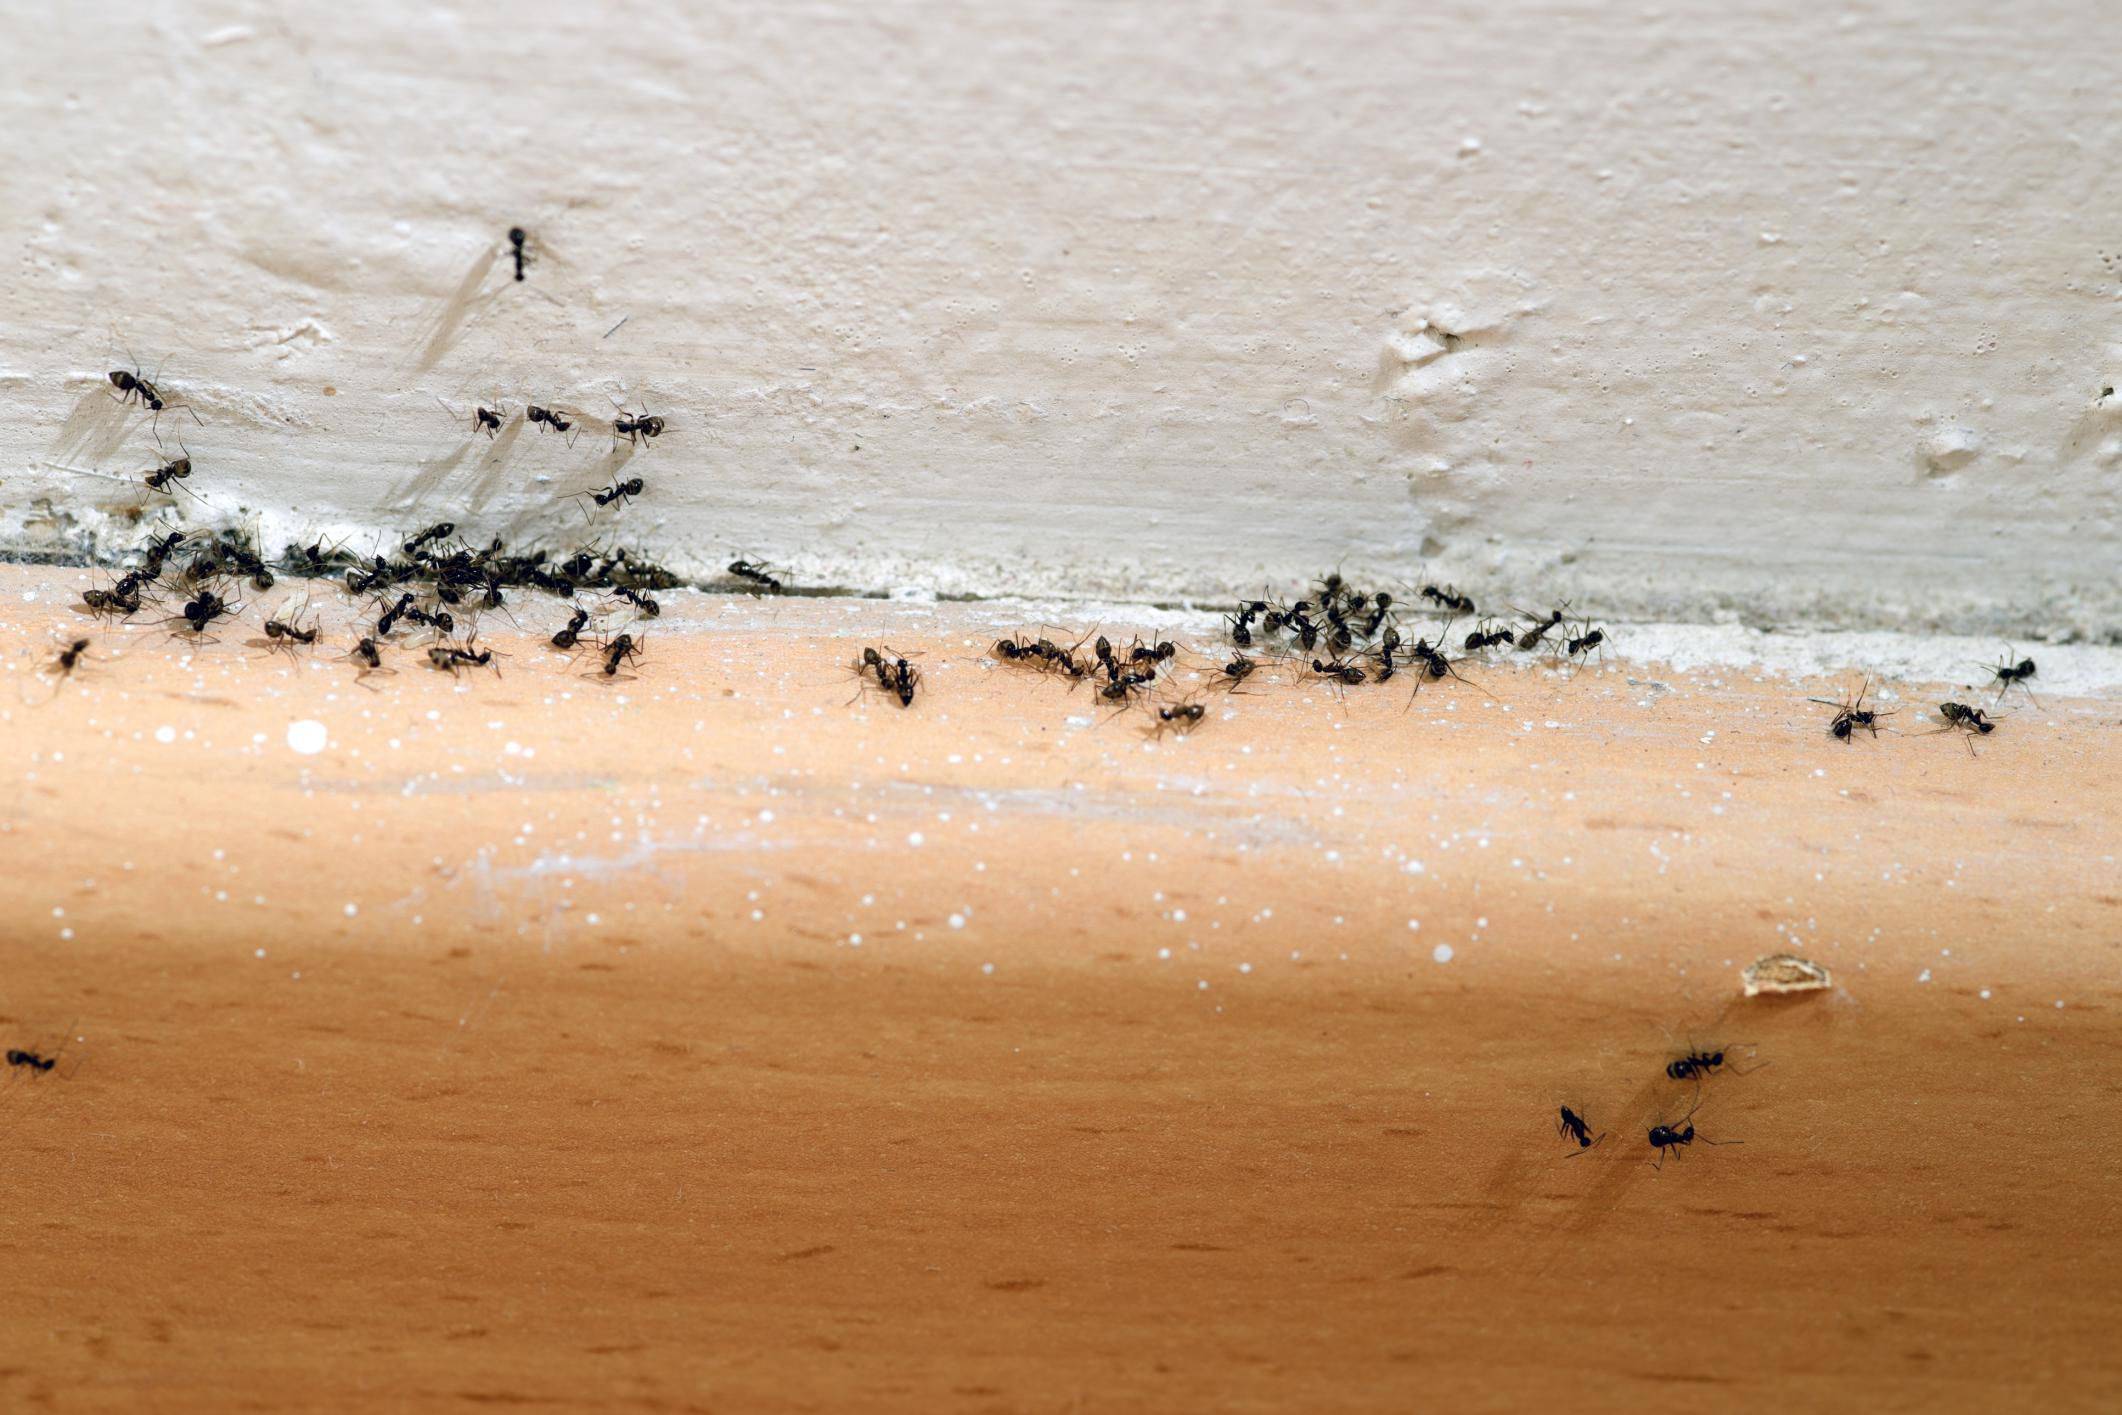 Средства от красных муравьев топ-5 препаратов для уничтожения